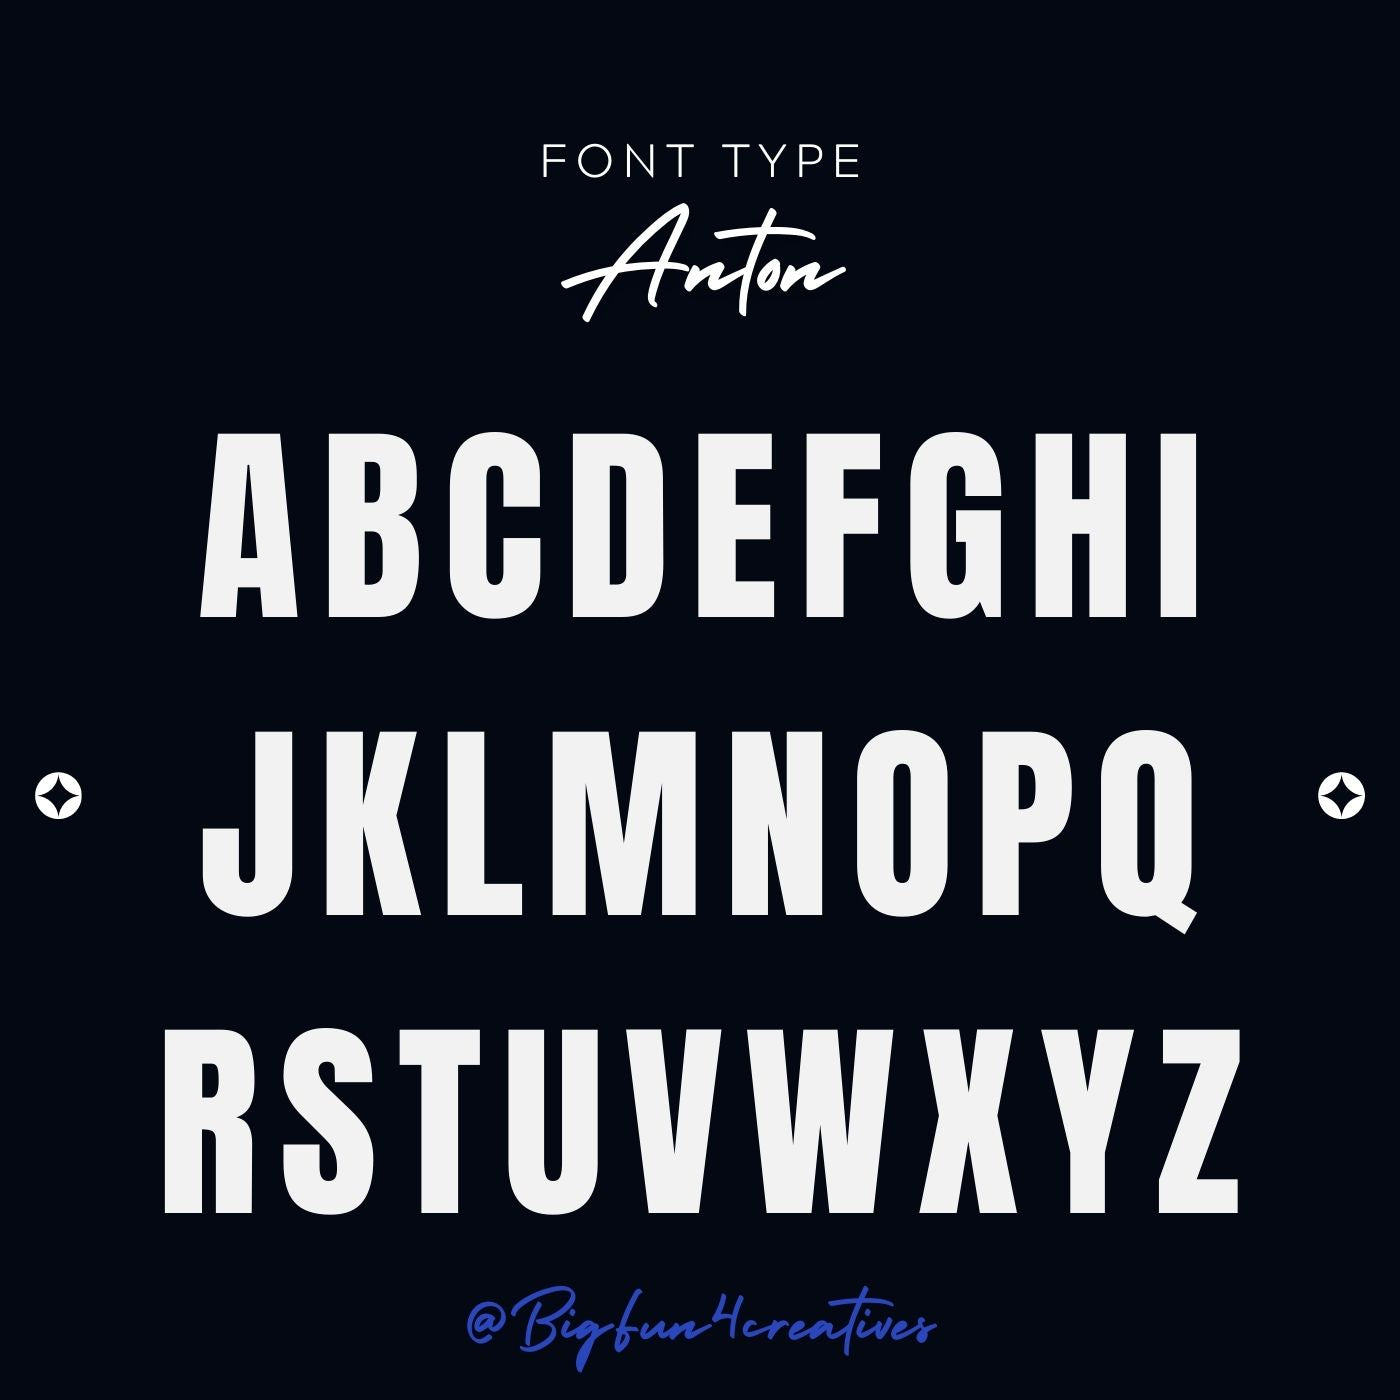 Anton Font Type Lettering Stencil Set